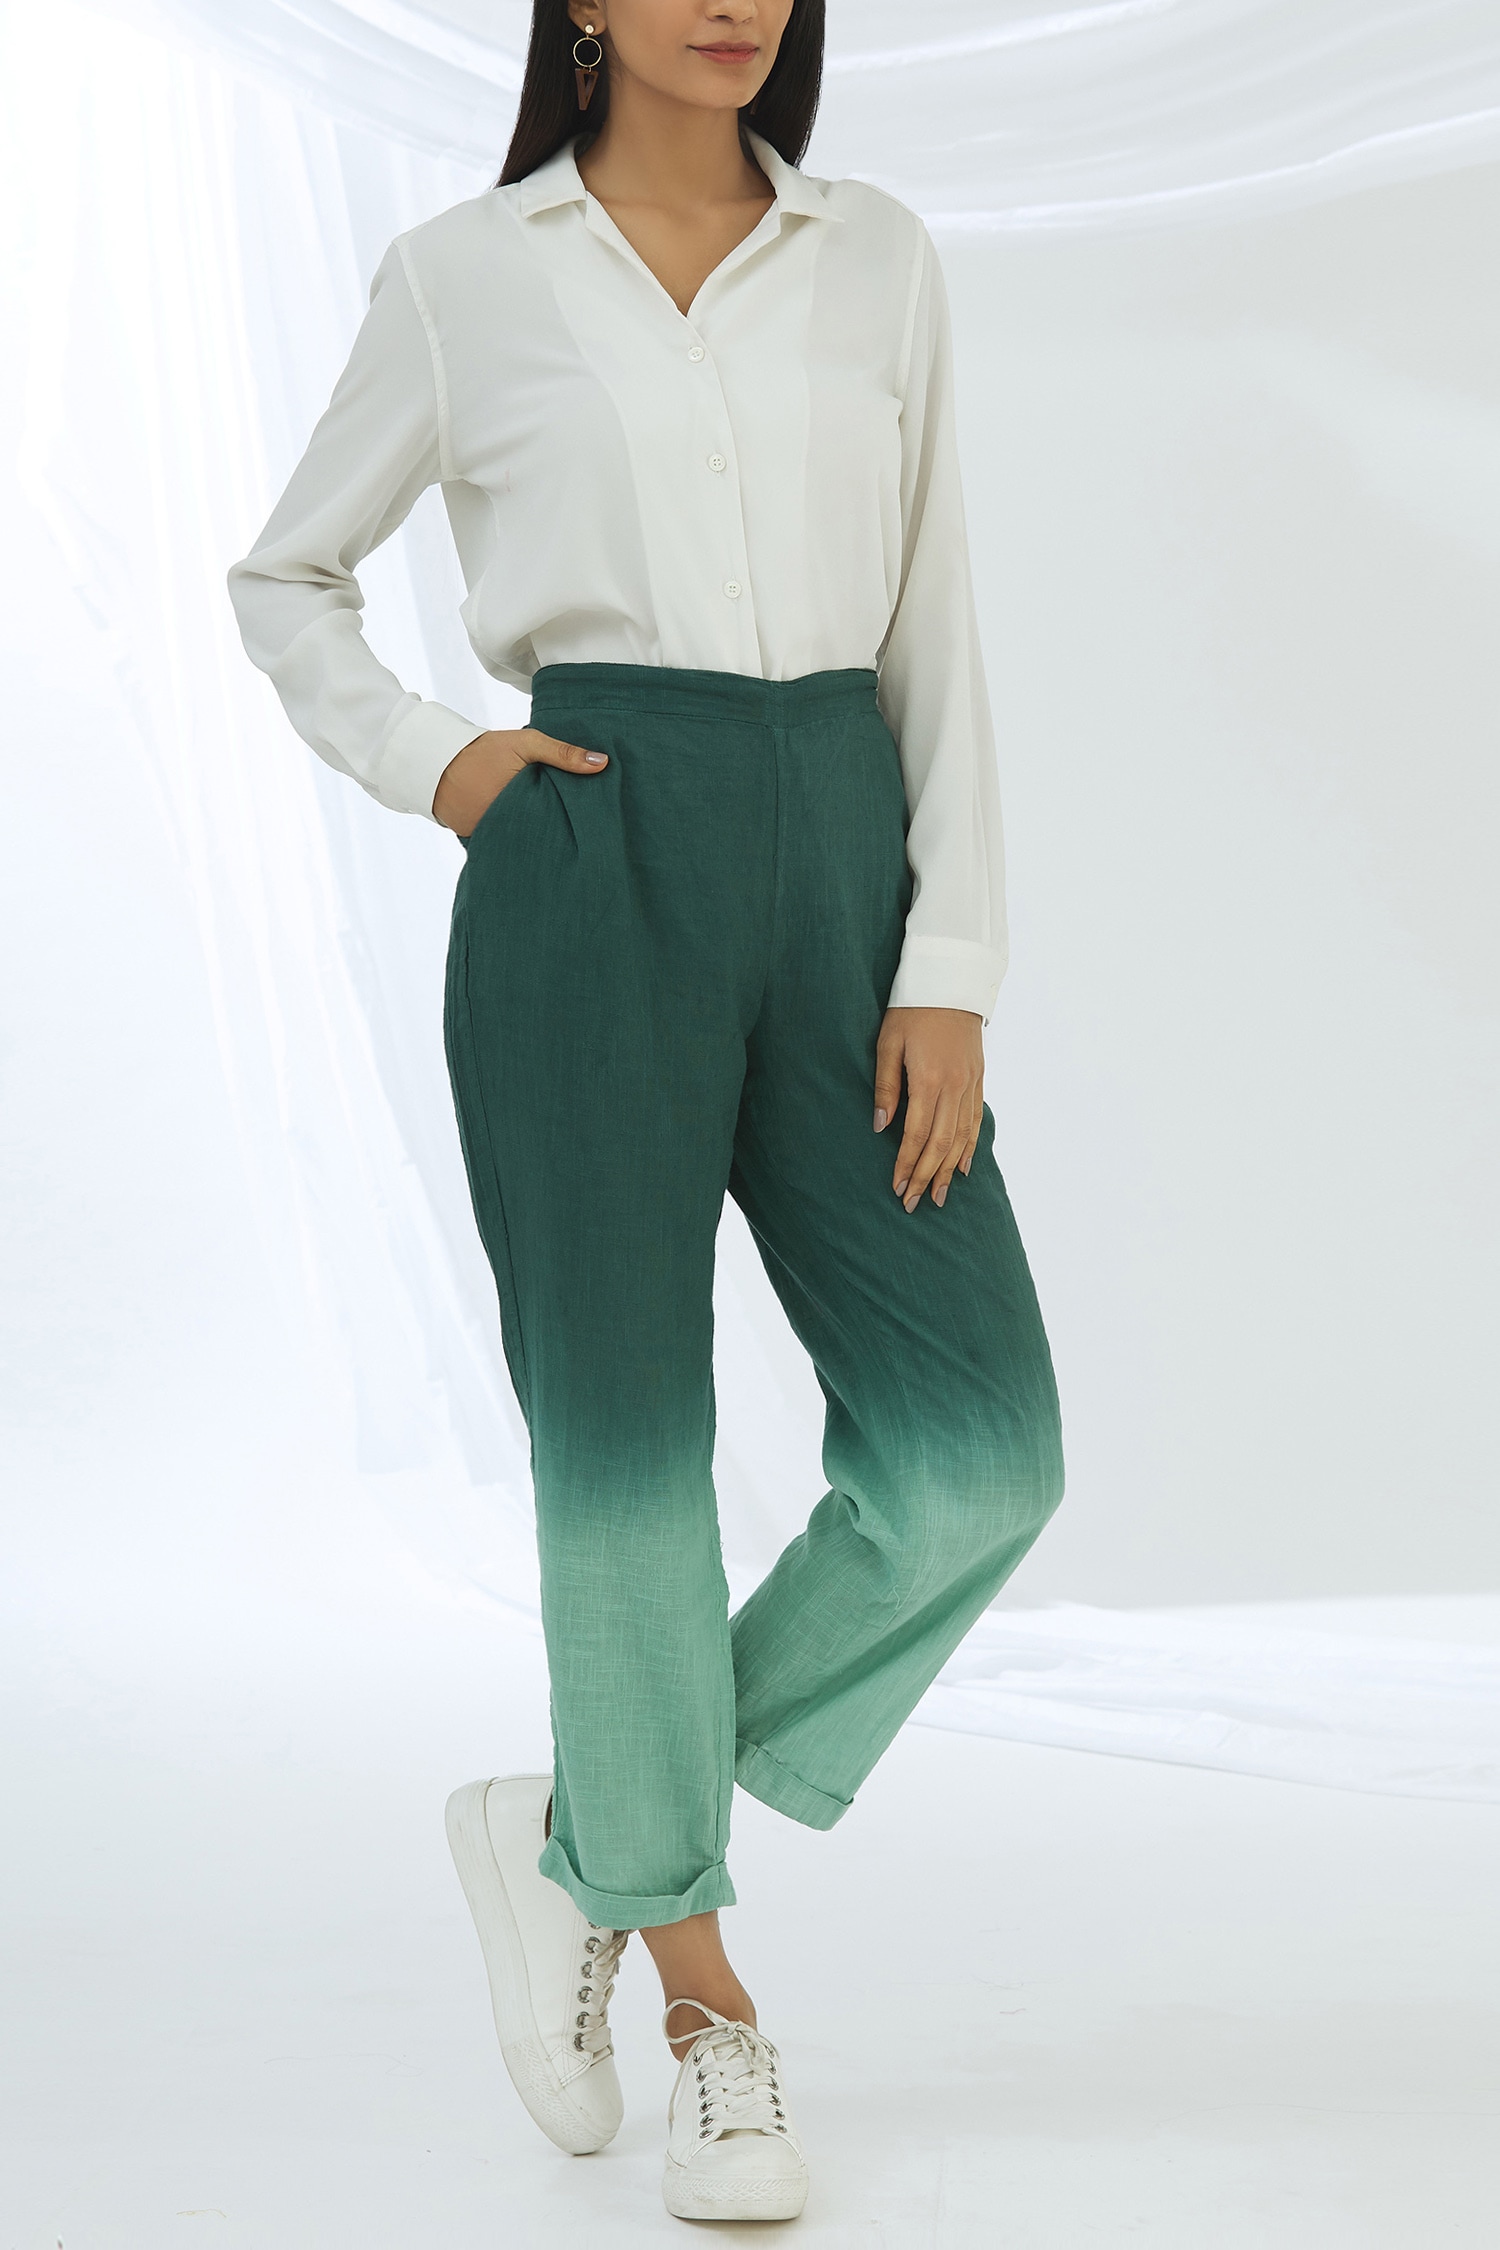 Buy Blue Trousers  Pants for Women by GAP Online  Ajiocom